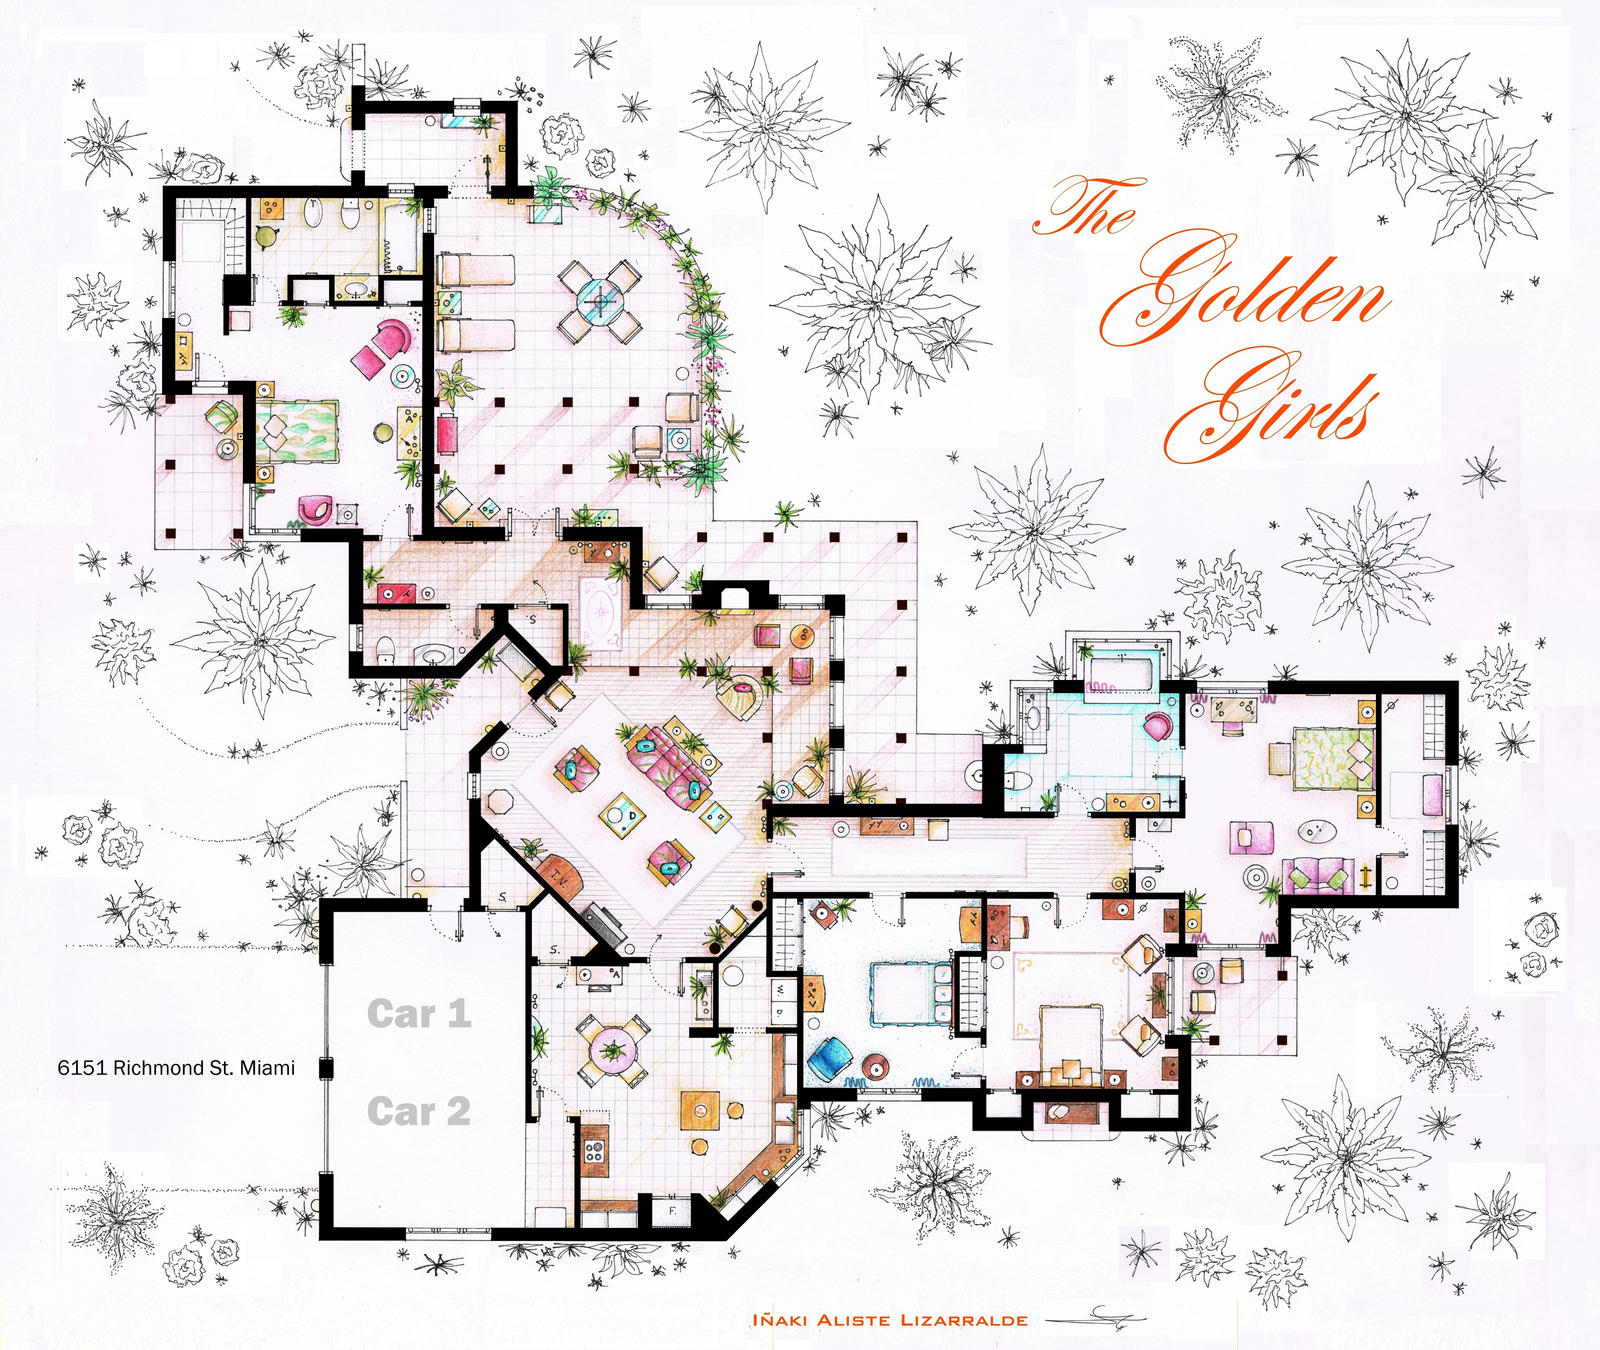 The Golden Girls House Floorplan V 1 By Nikneuk On Deviantart